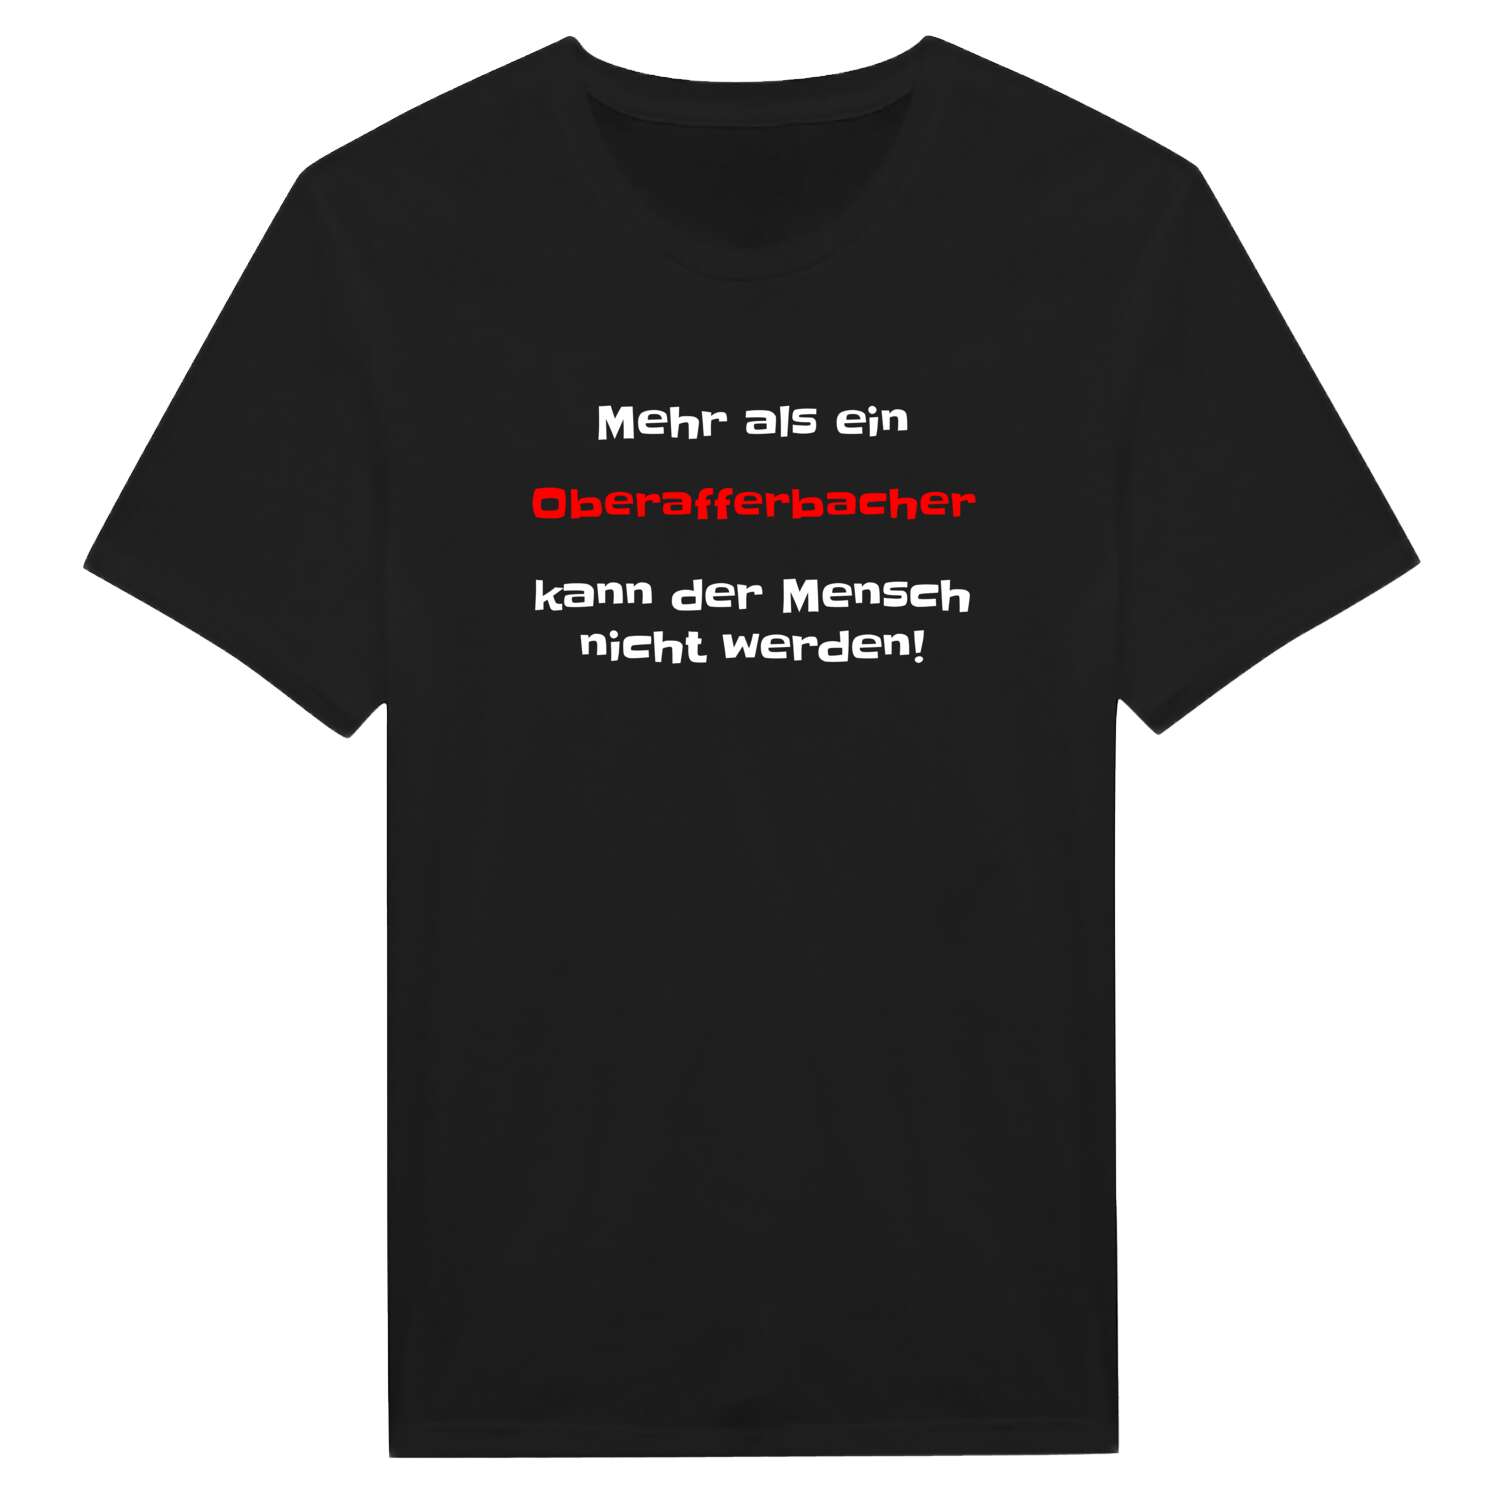 Oberafferbach T-Shirt »Mehr als ein«